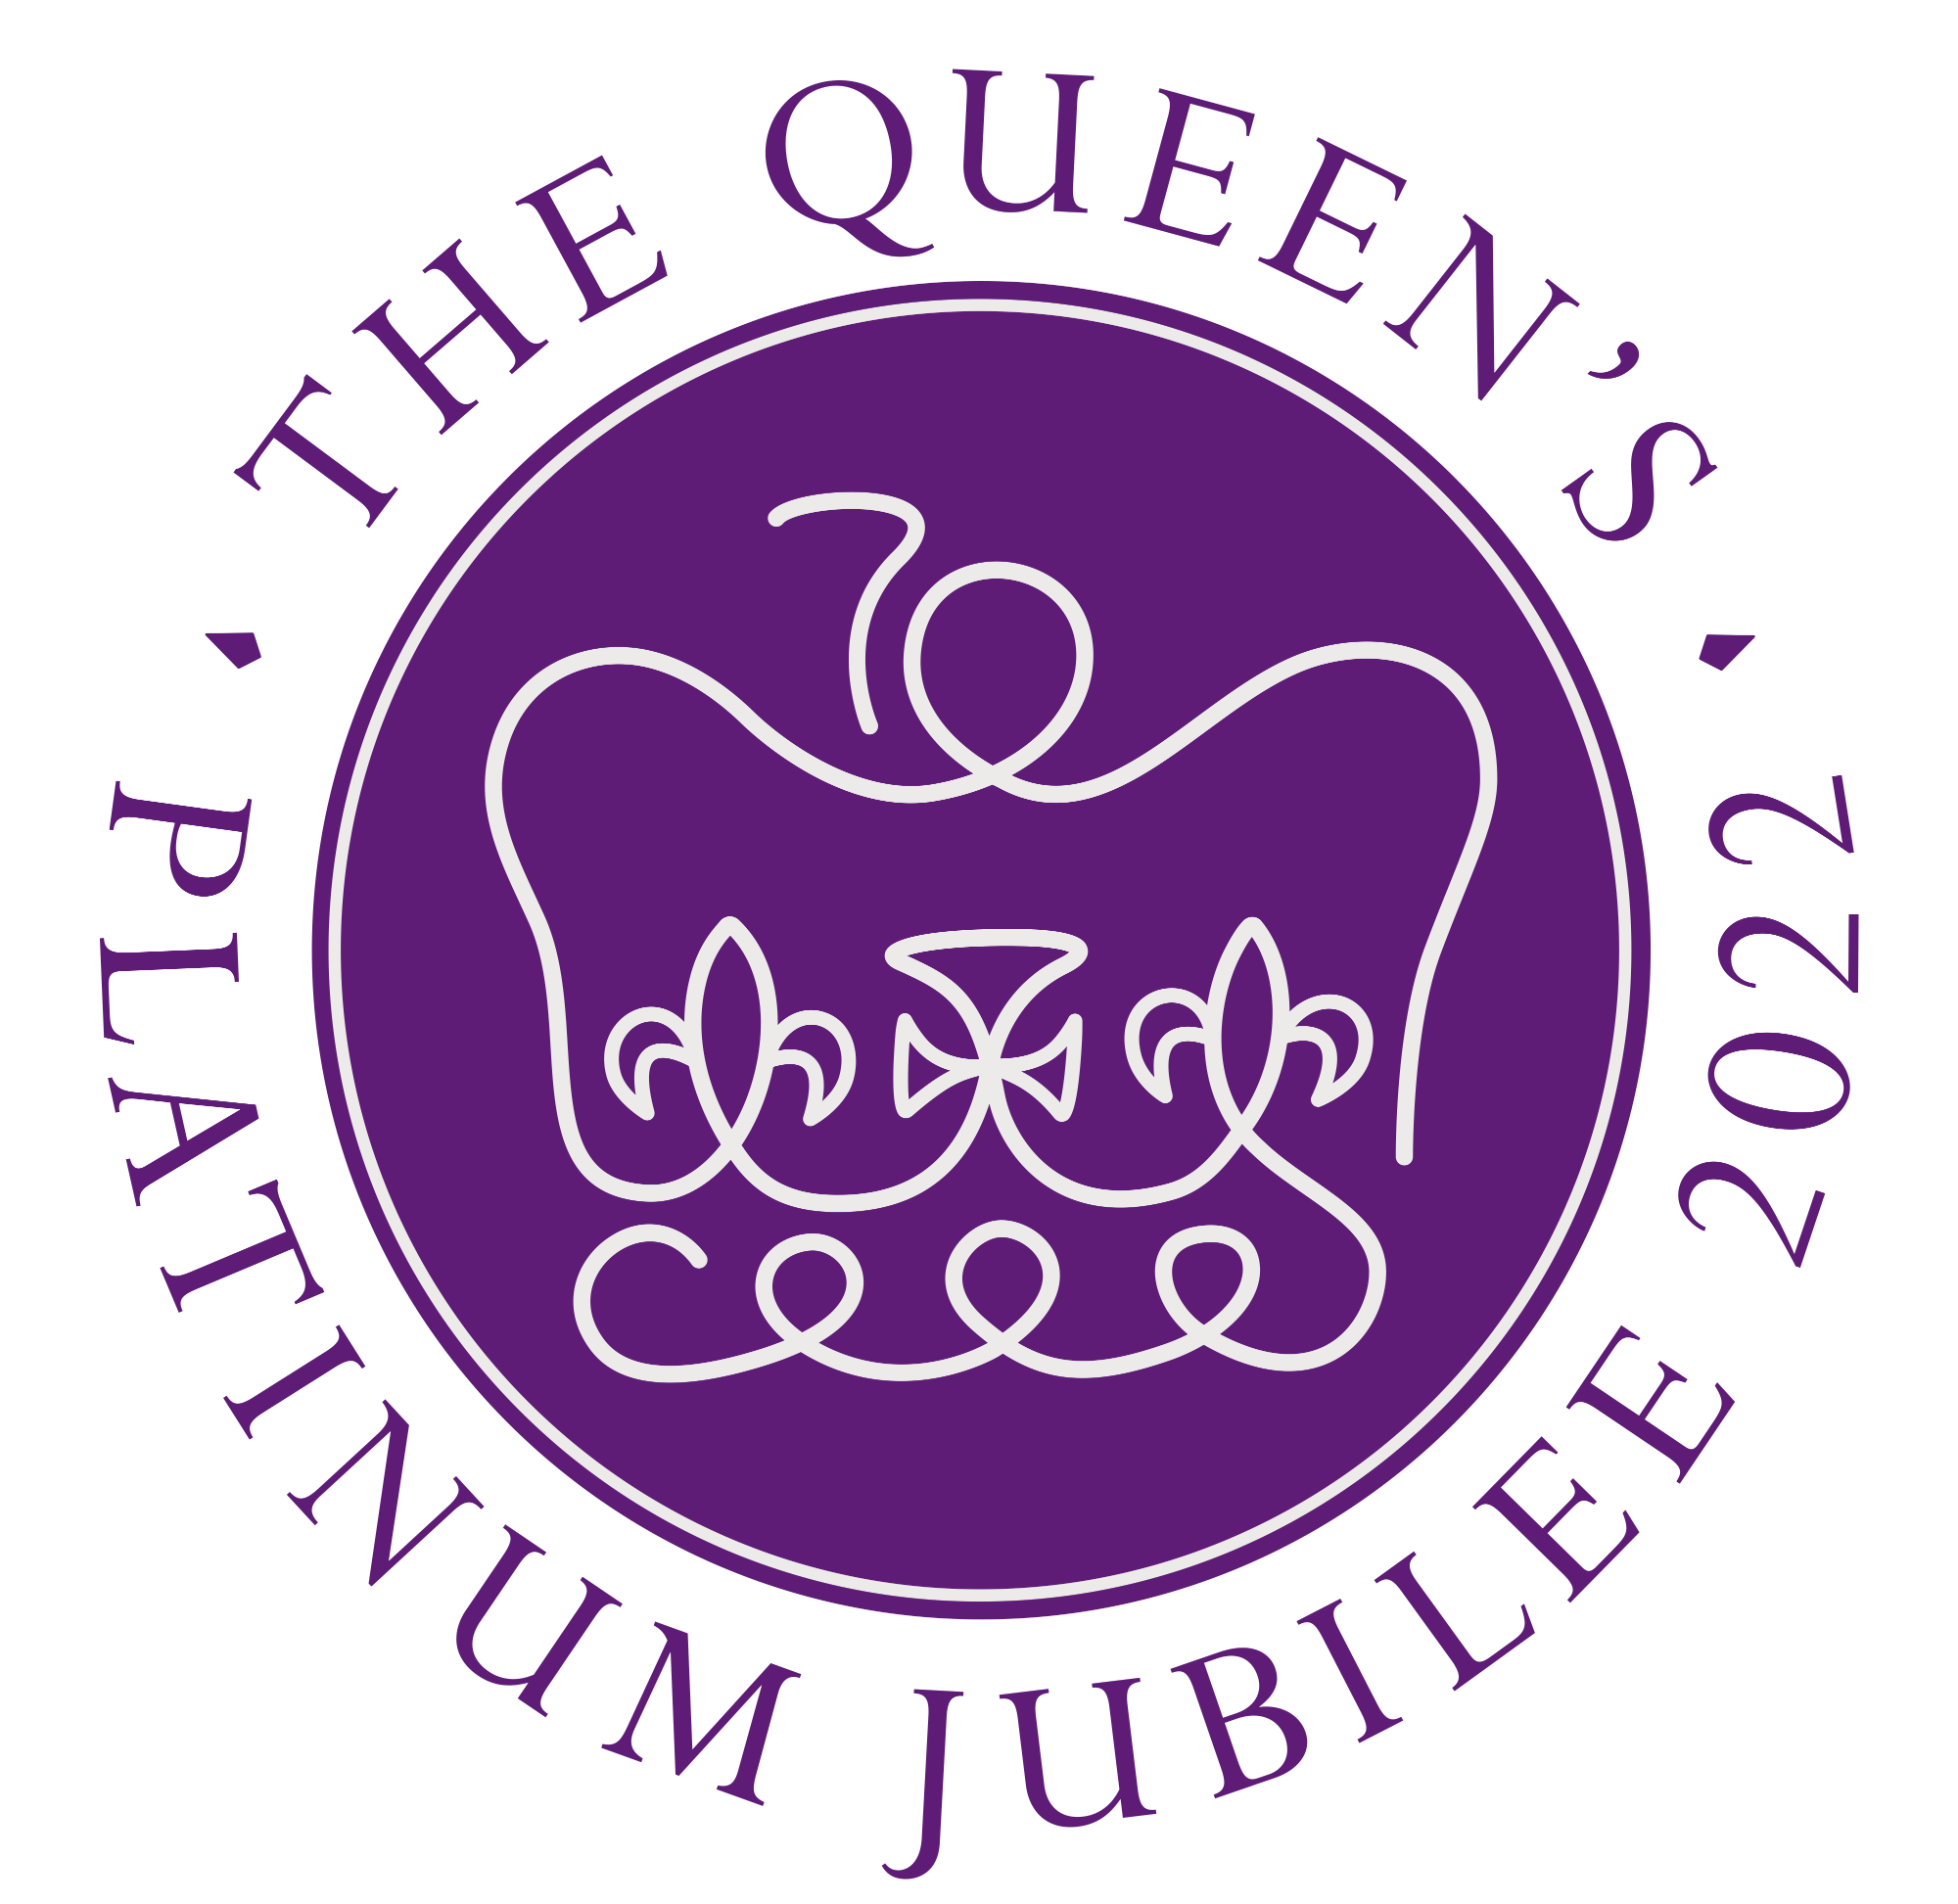 Queen's Platinum Jubilee 2022 logo